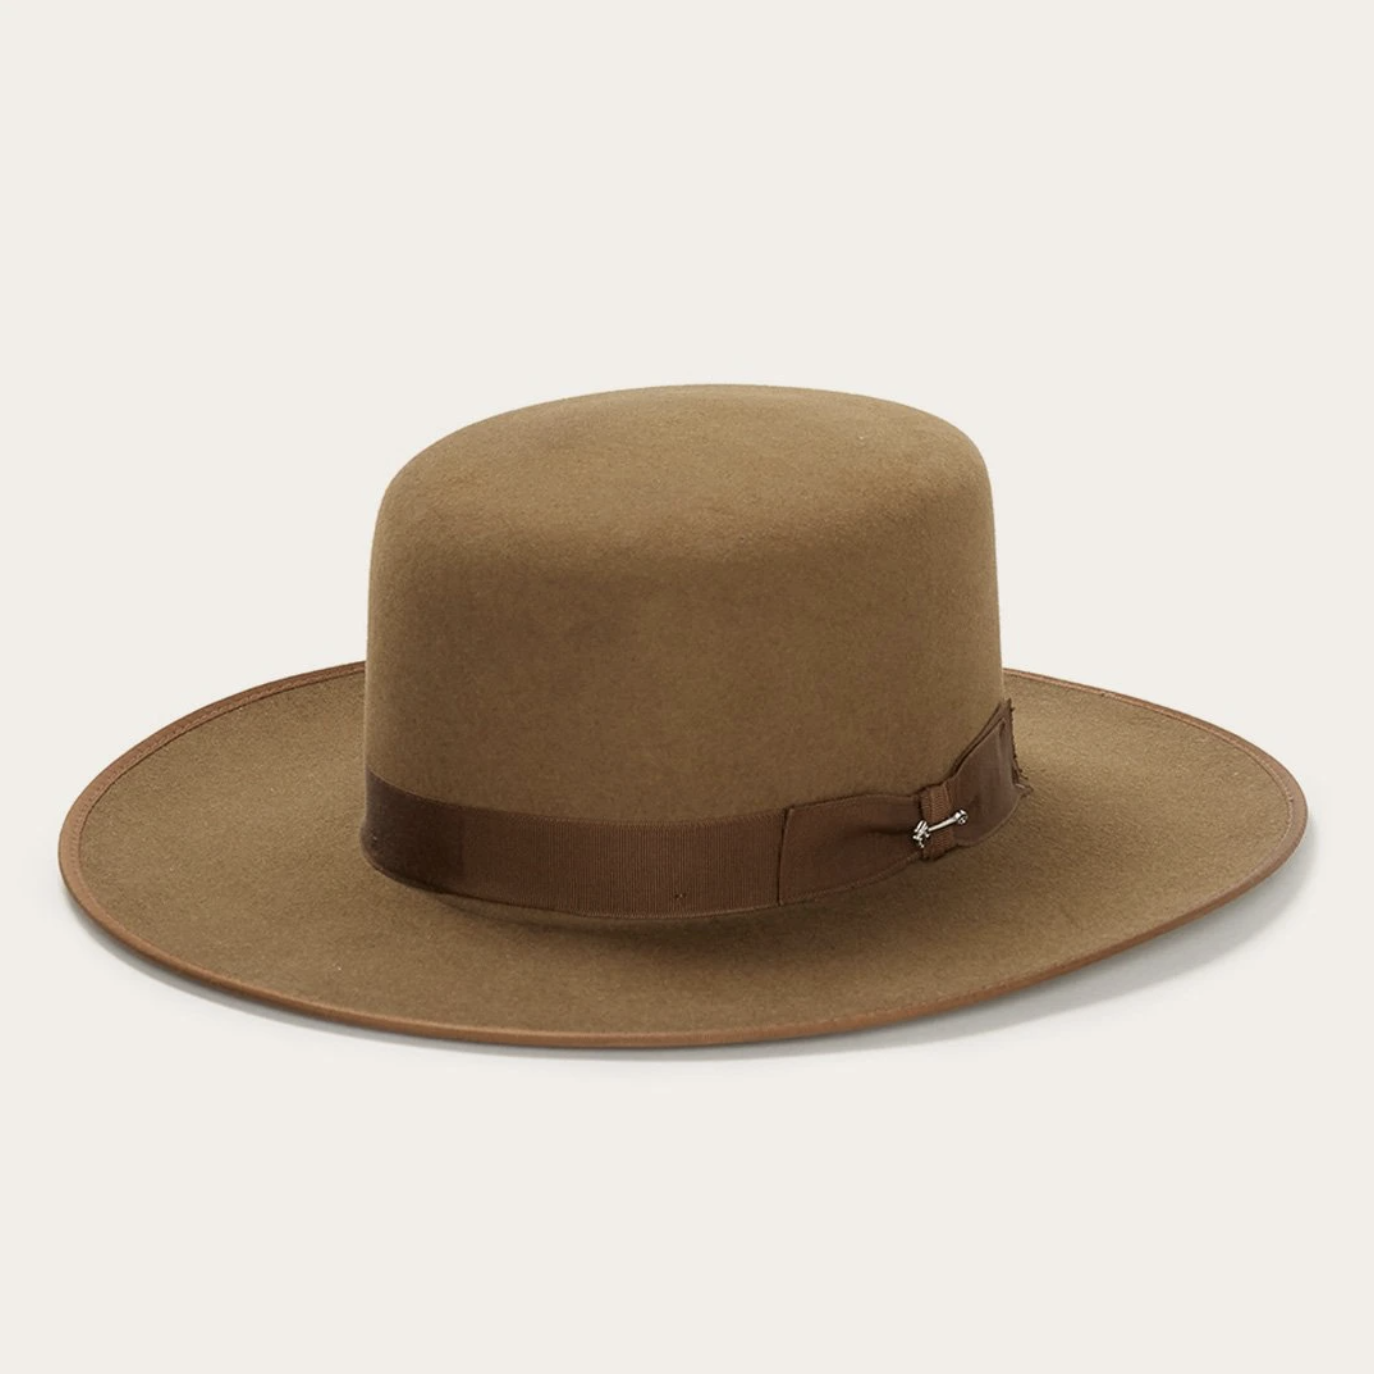 Stetson Cowboy Hat $145